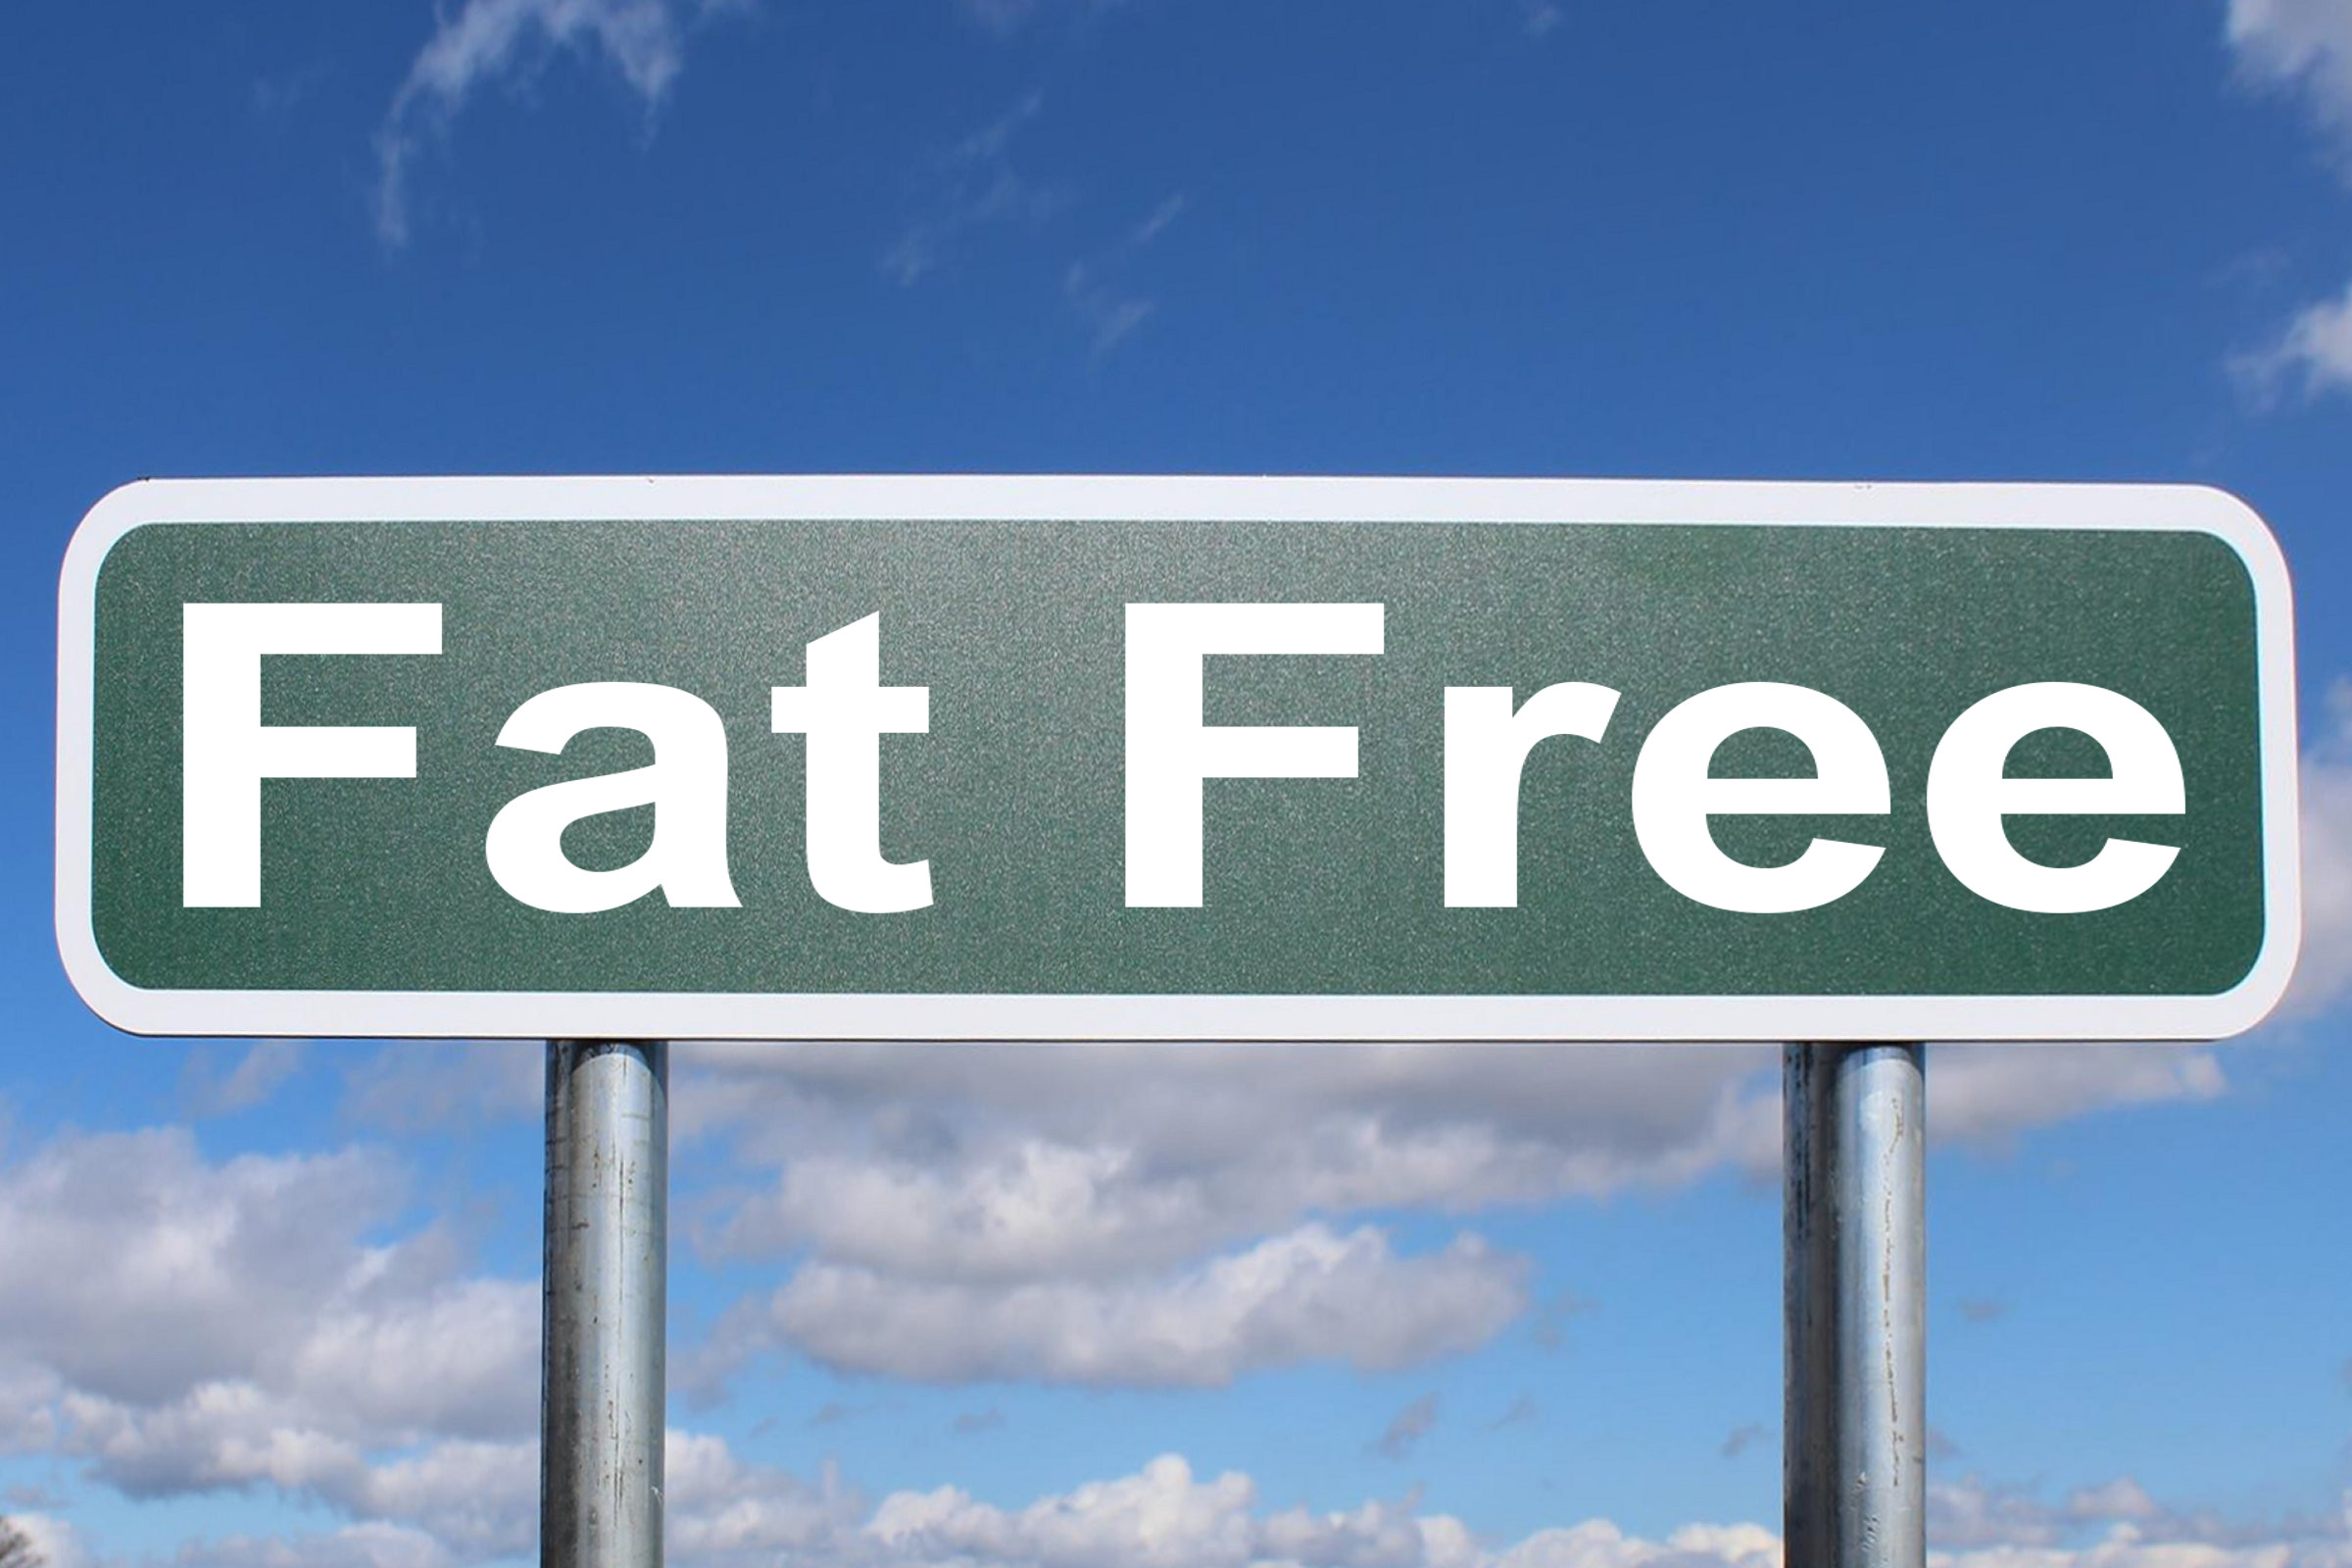 fat free